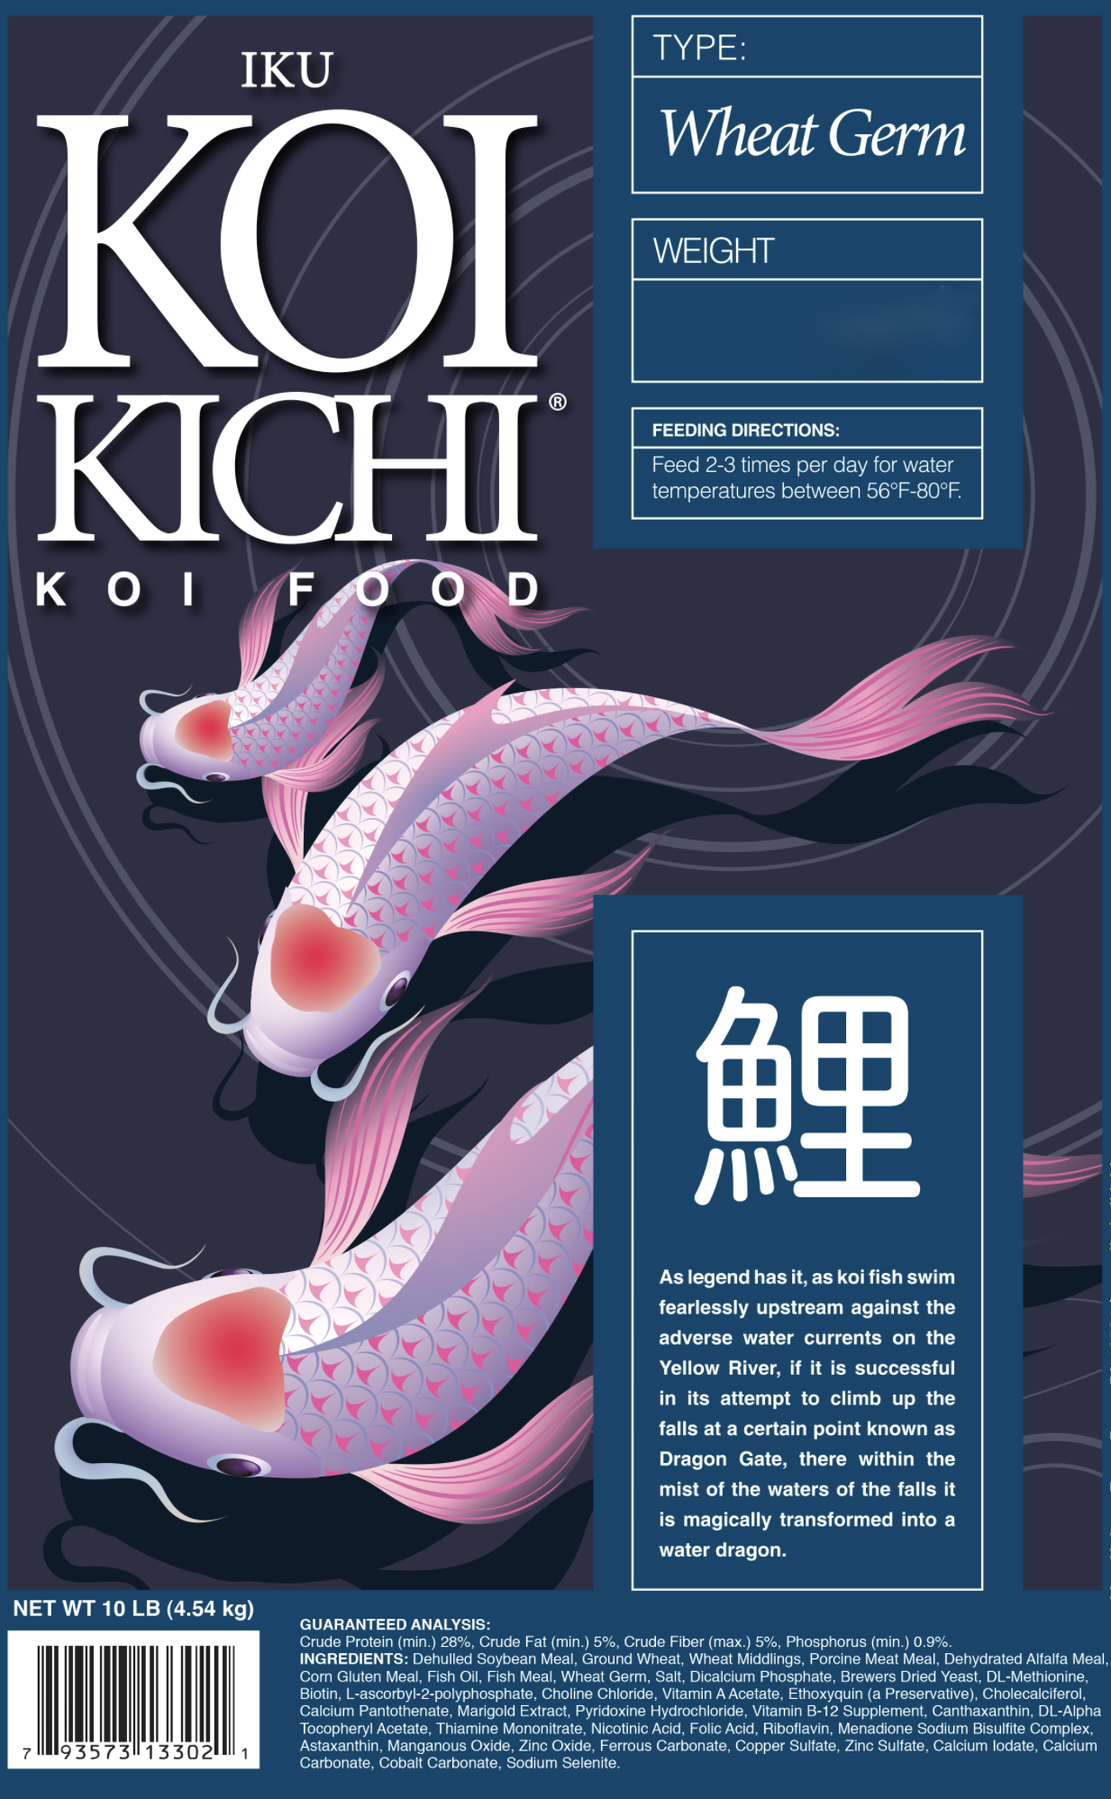 Iku Koi Kichi Wheat Germ Koi Fish Food